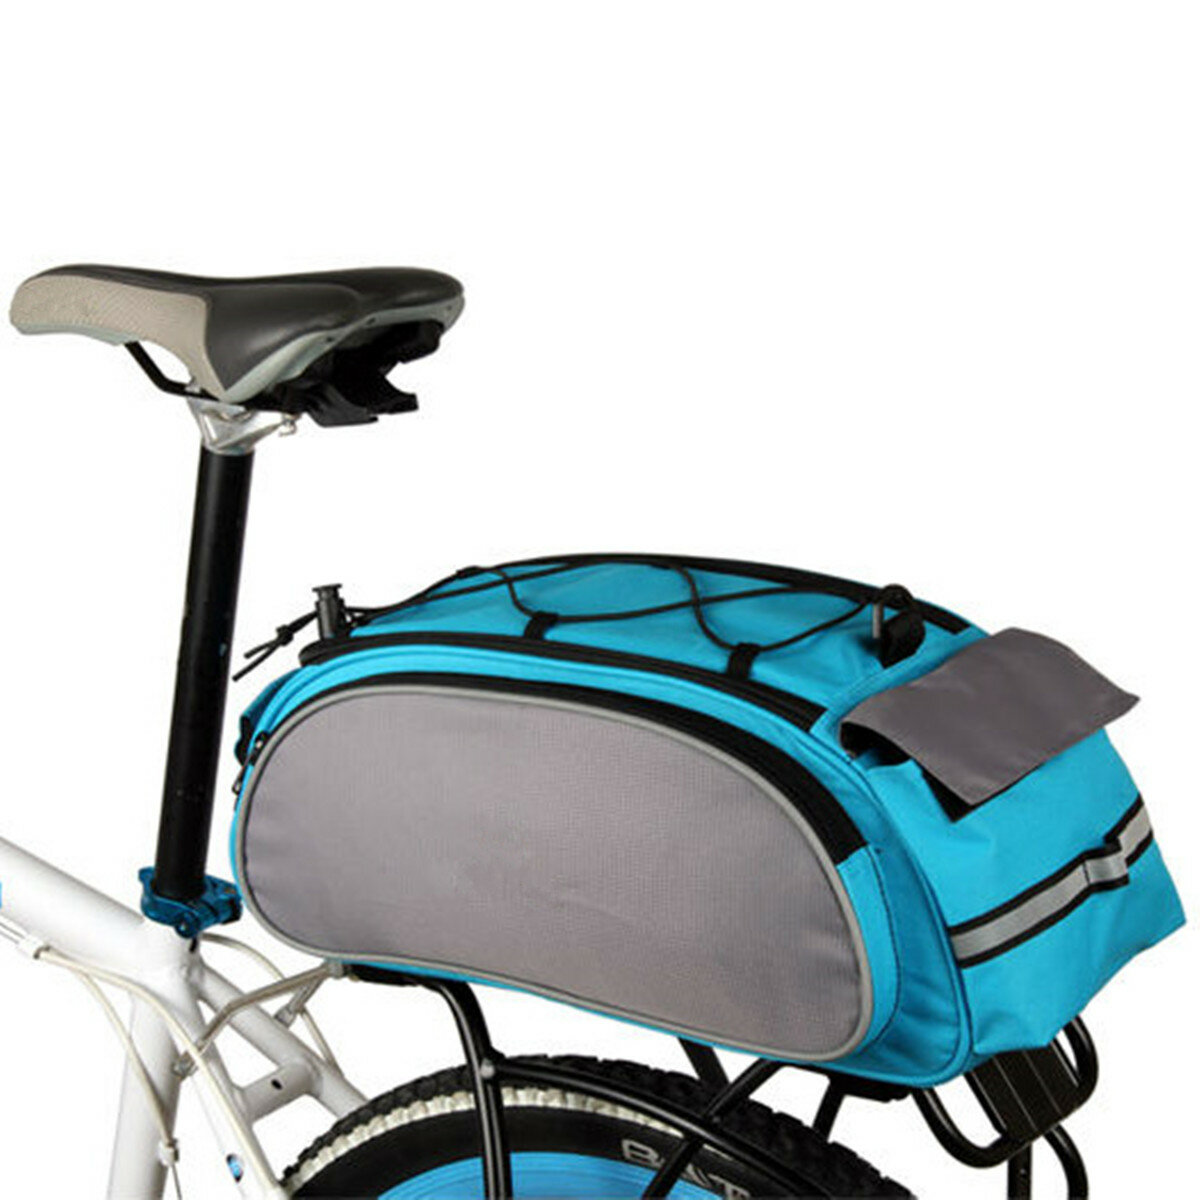 

BIKIGHT 13L Bike Багаж Сумка Многоцелевая прочная наплечная сумка Велоспорт Pannier Rear Rack Сумка